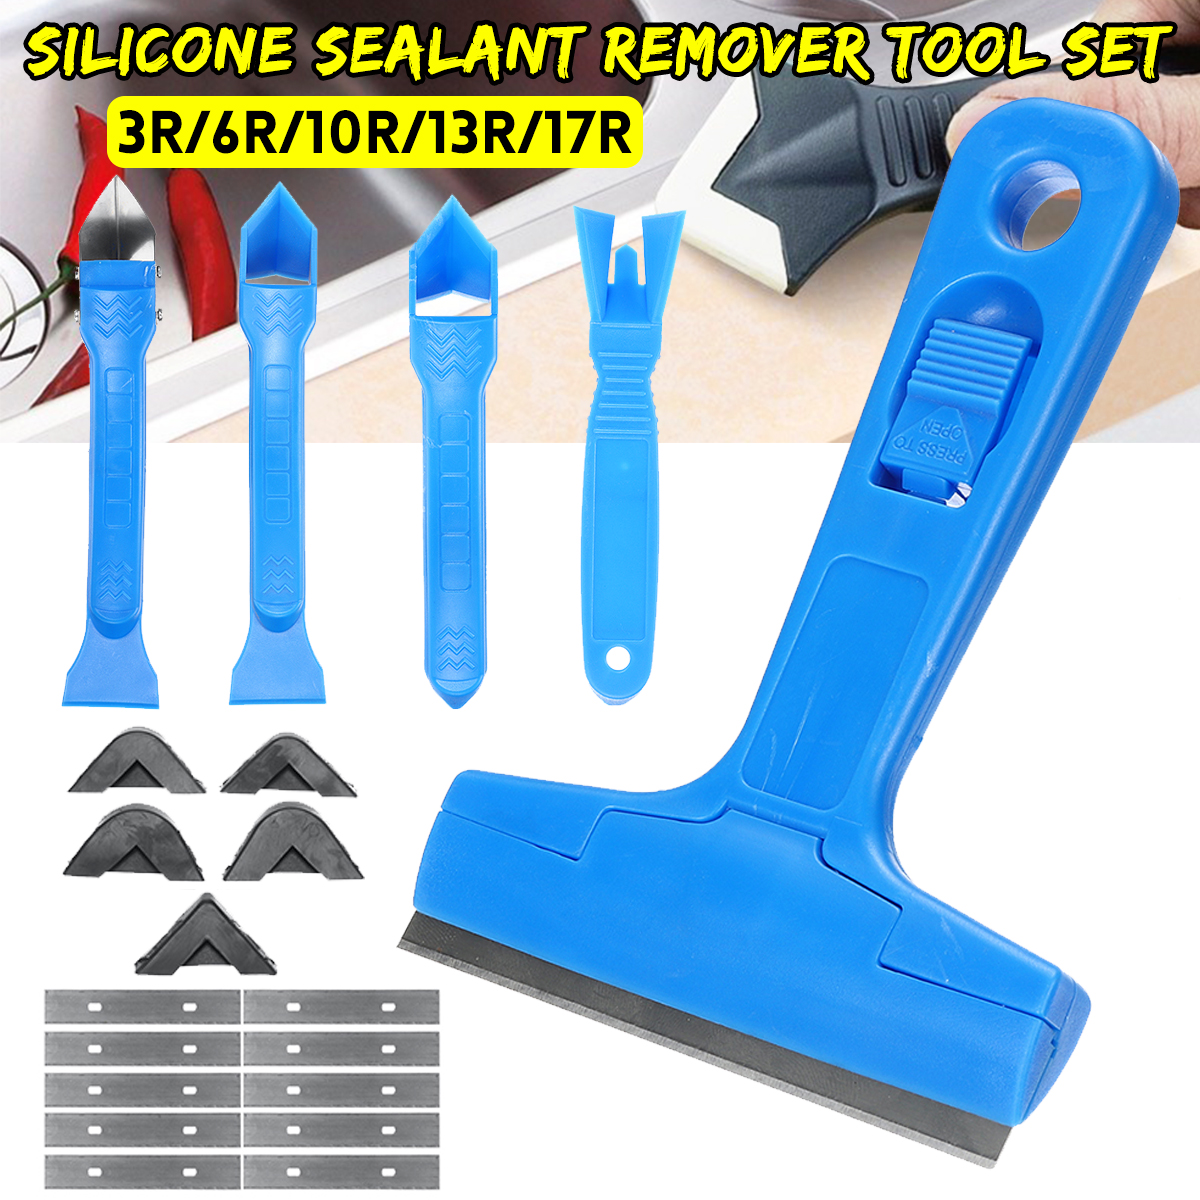 Silicone-Sealant-Remover-Scraper-Tools-Home-Applicator-Kit-3R6R10R13R17R-1648110-1